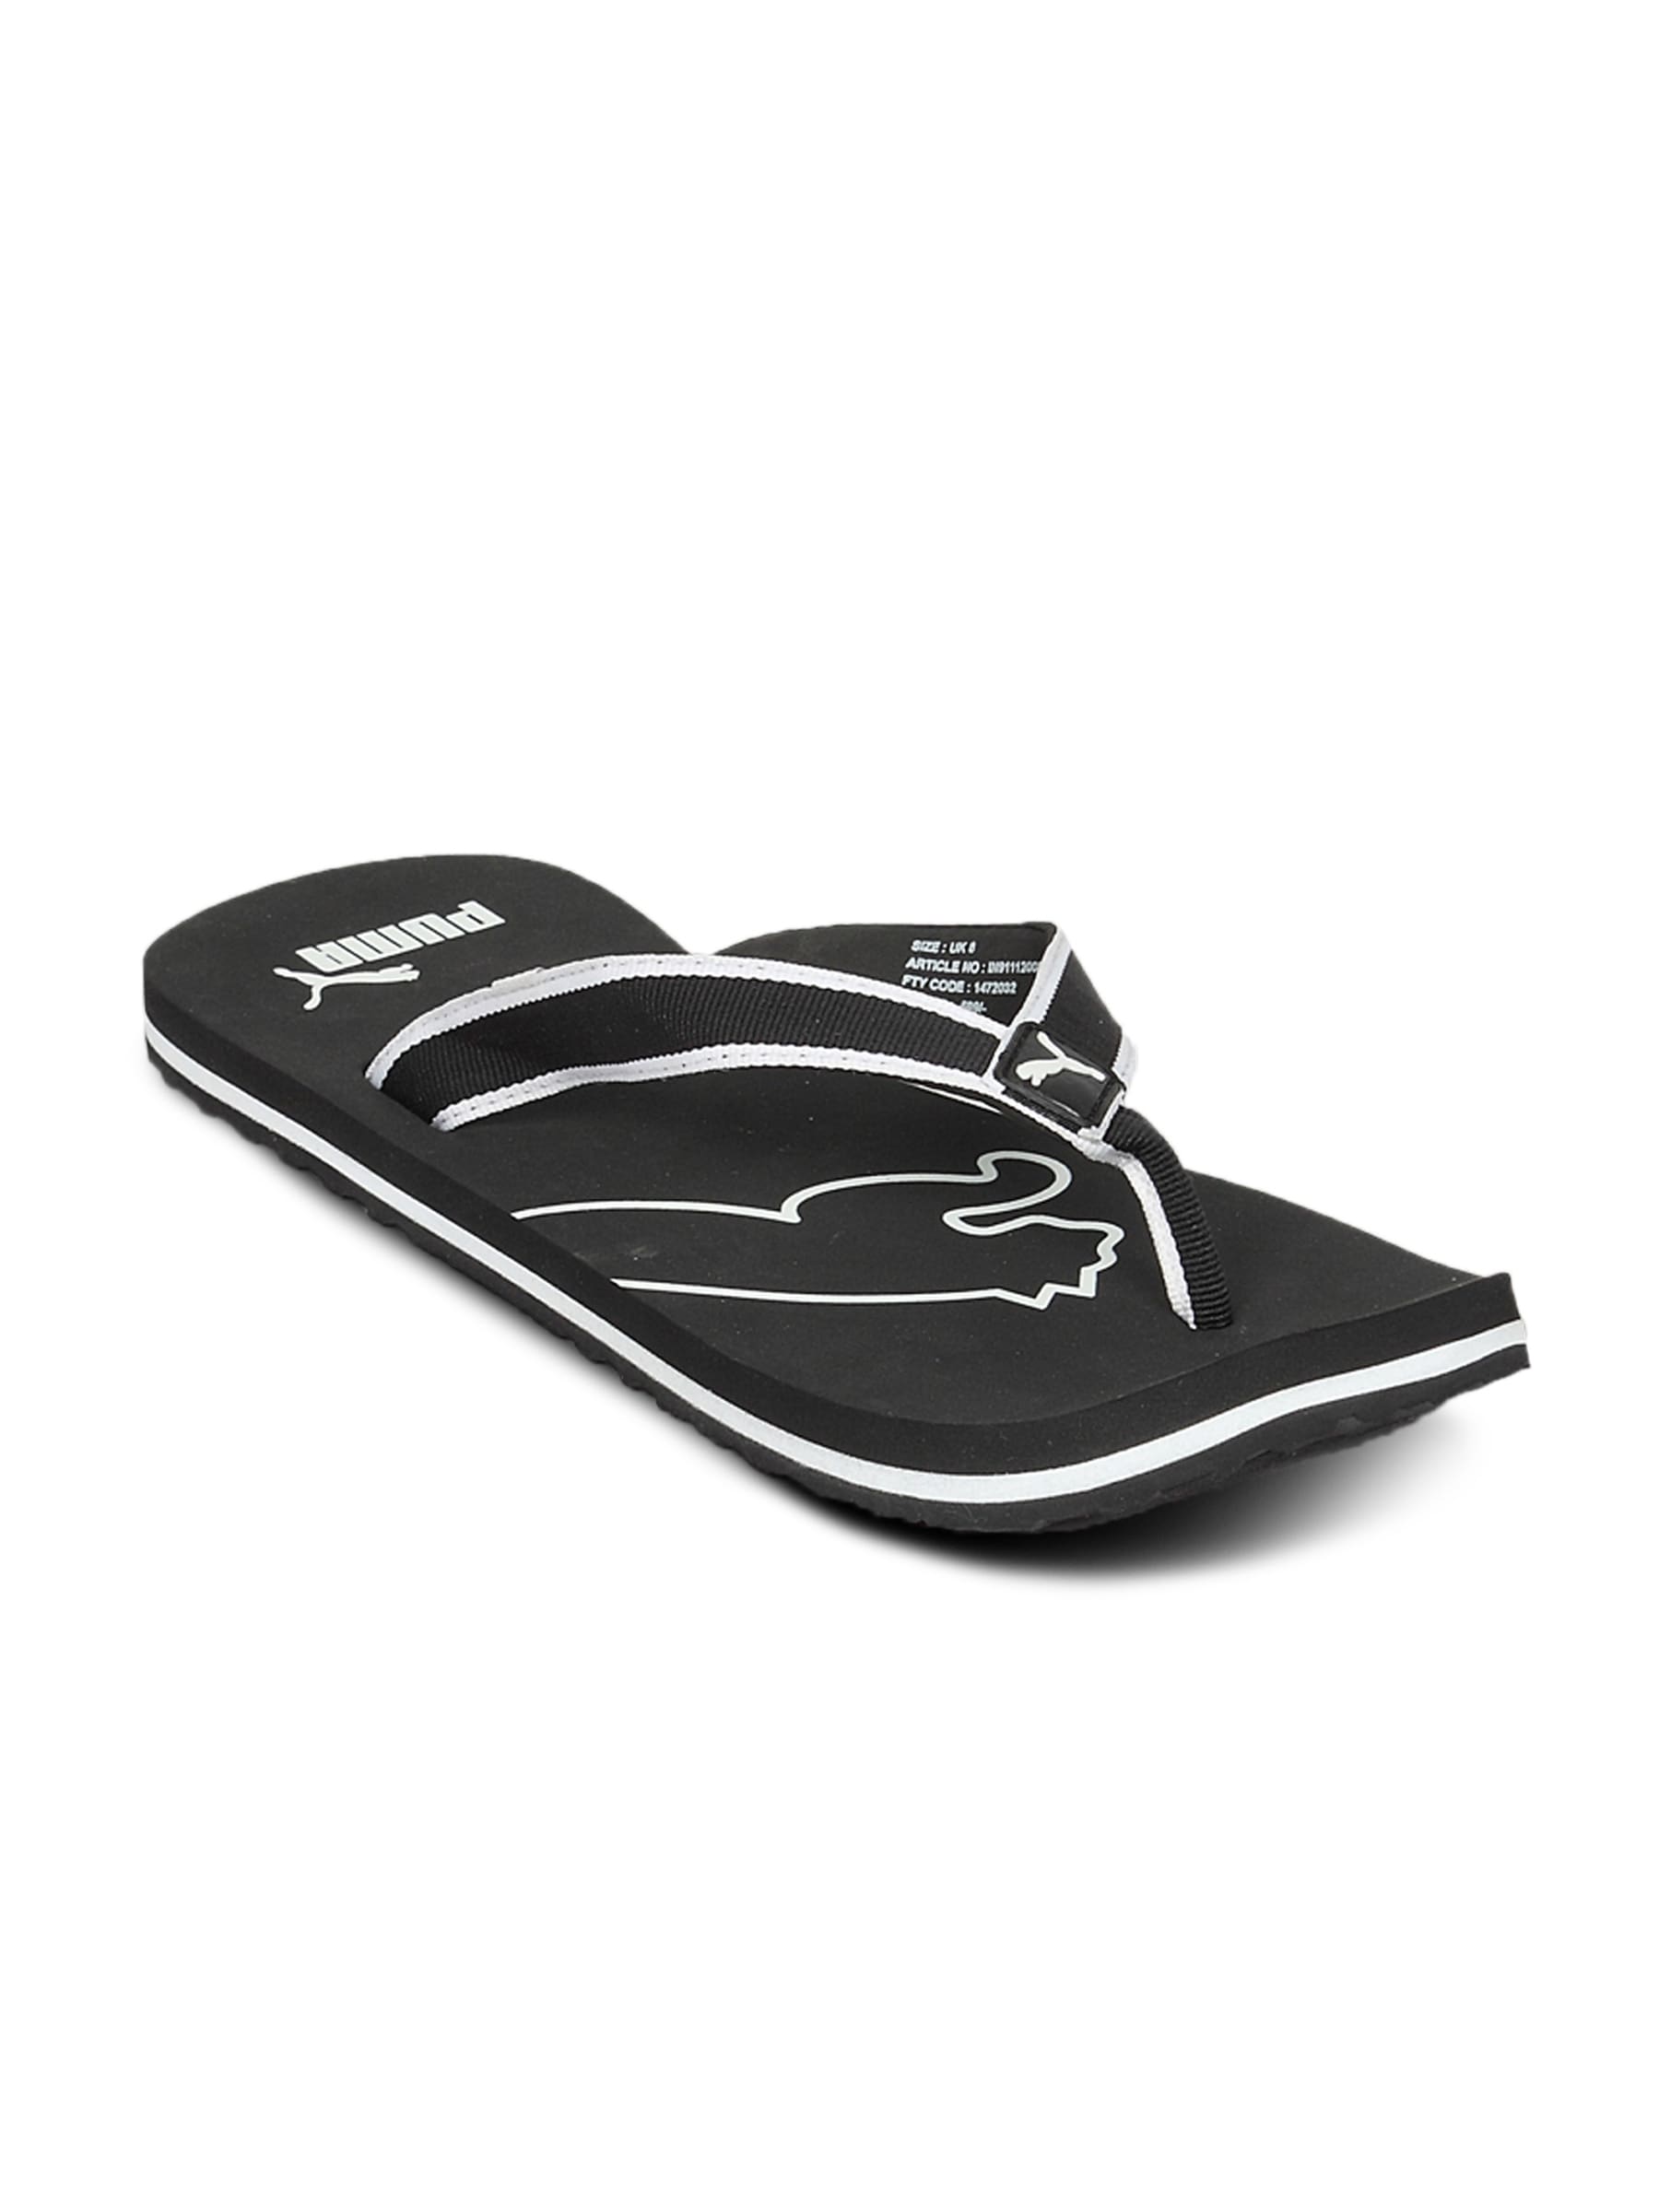 Puma Unisex Surf Black White Flip Flop